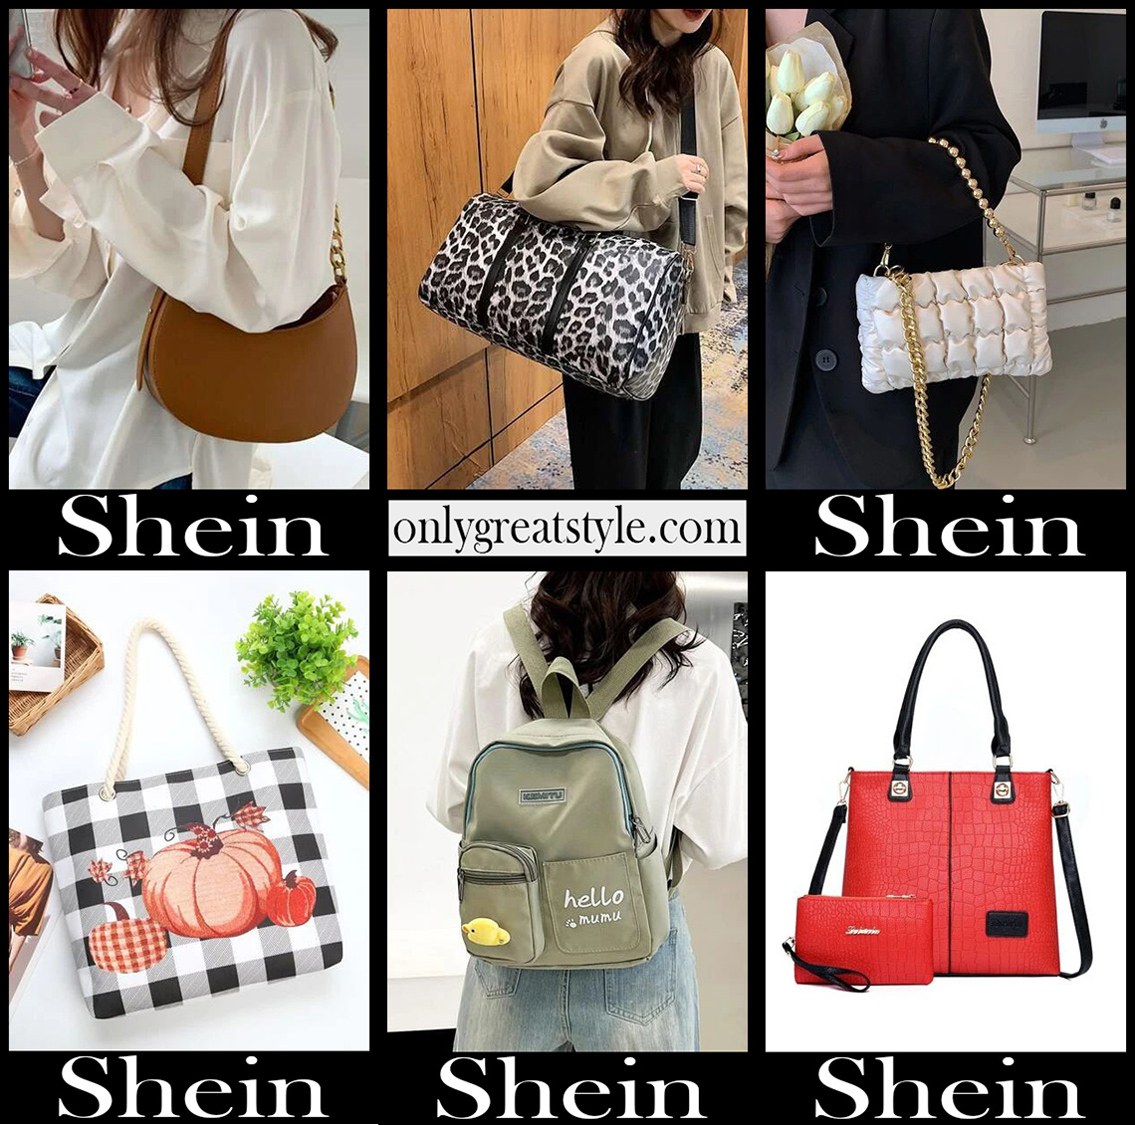 NaijeyaStyleInspo's SHEIN Bags Collection on LTK